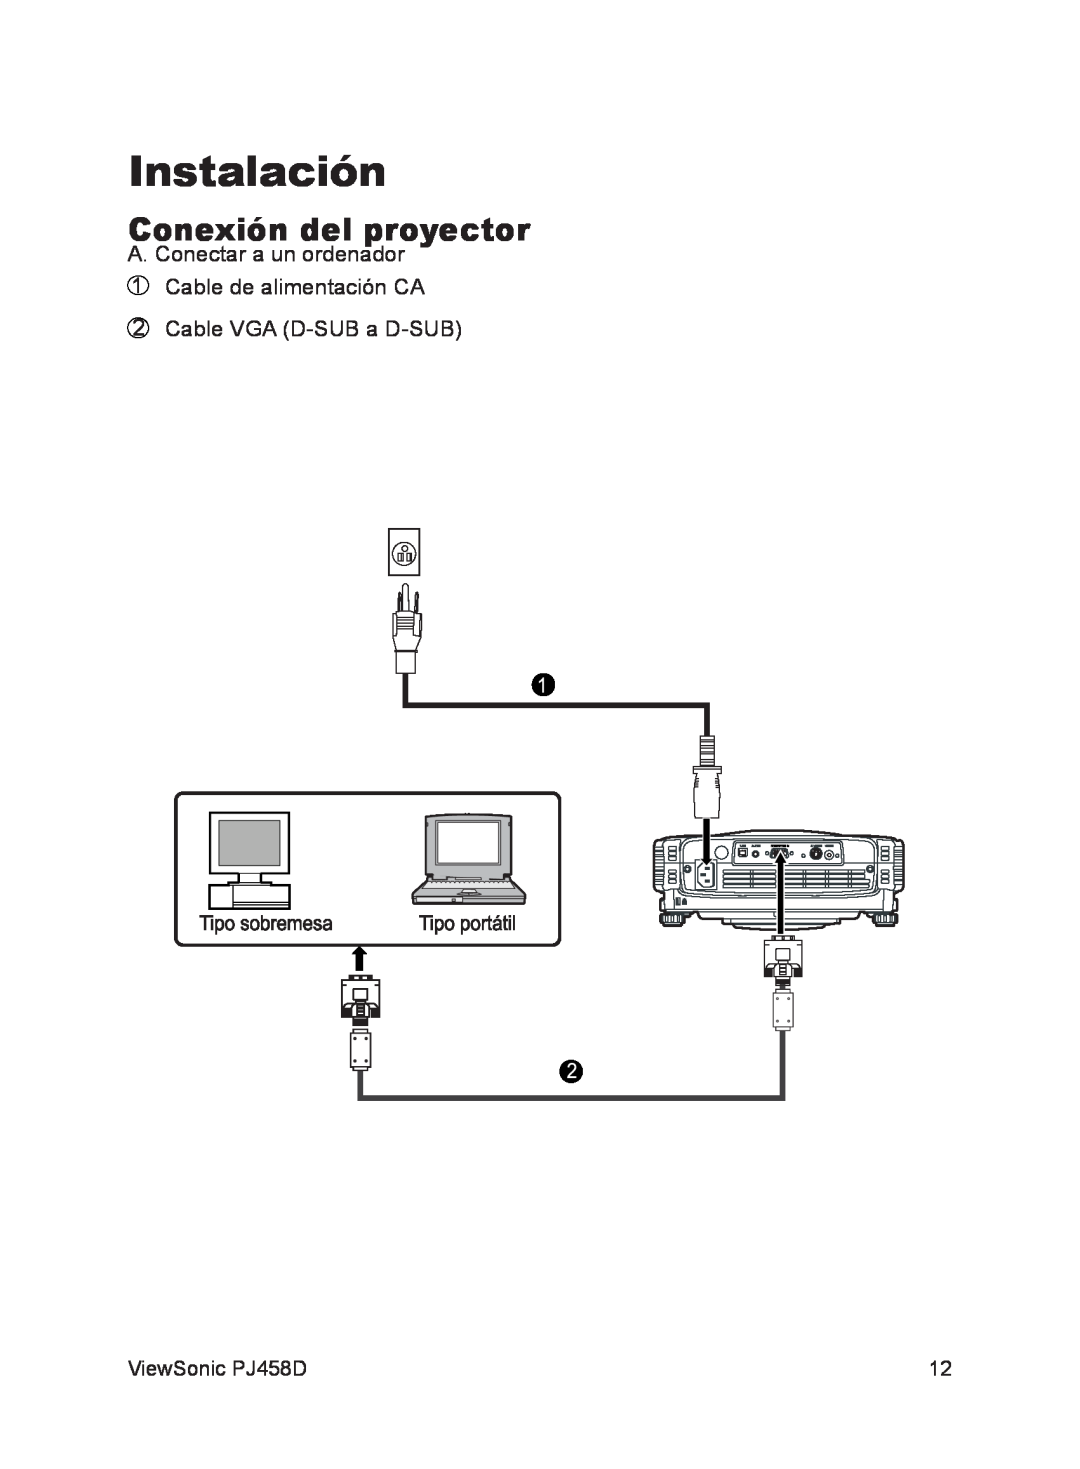 ViewSonic VS10872 manual Instalación, Conexión del proyector 